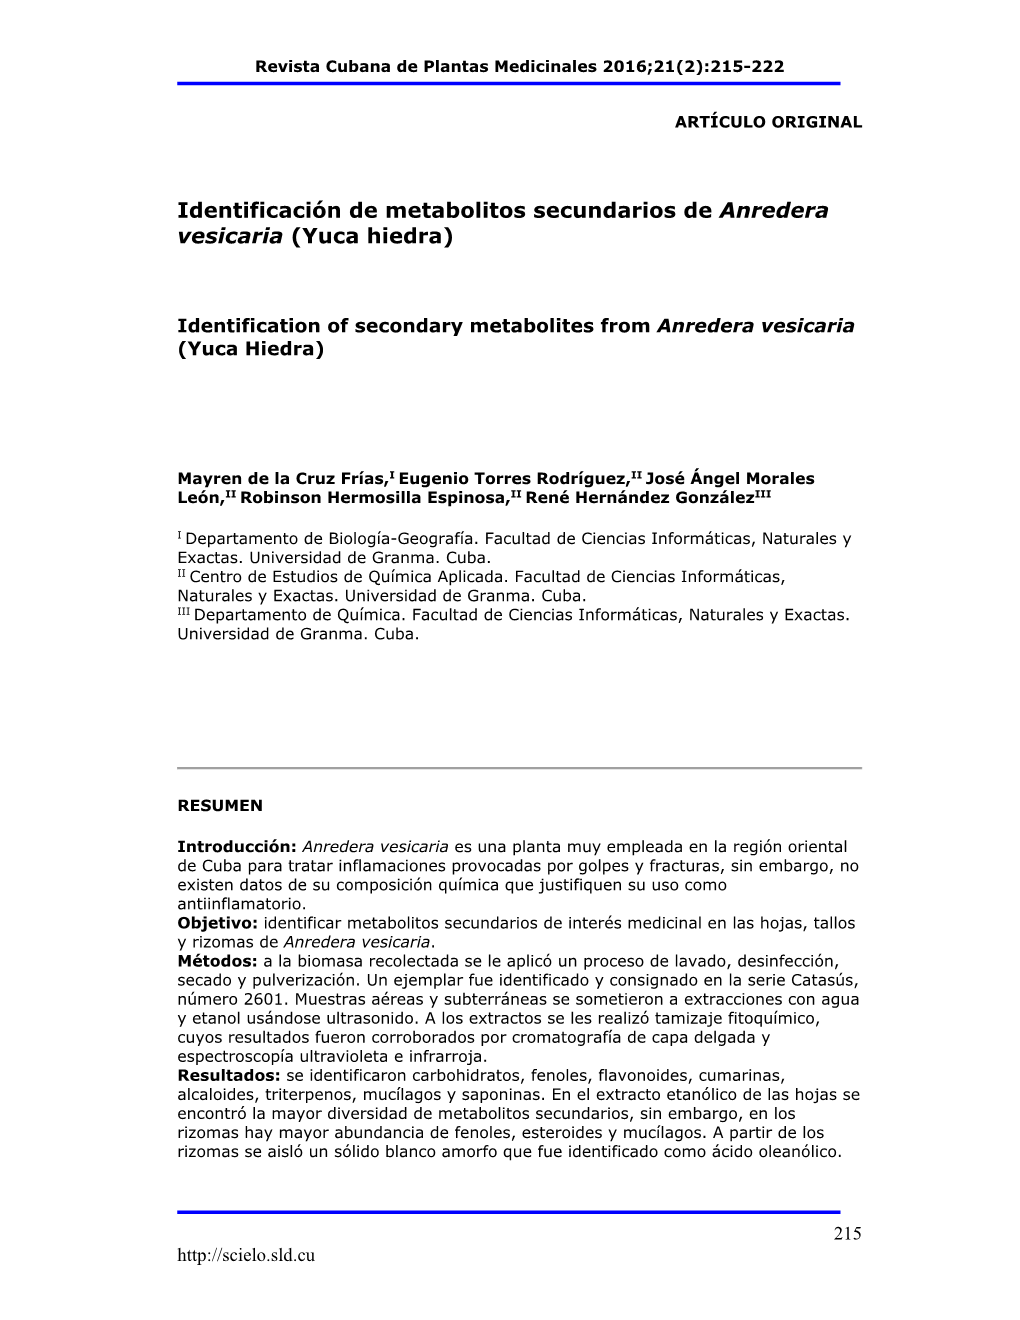 Identificación De Metabolitos Secundarios De Anredera Vesicaria (Yuca Hiedra)